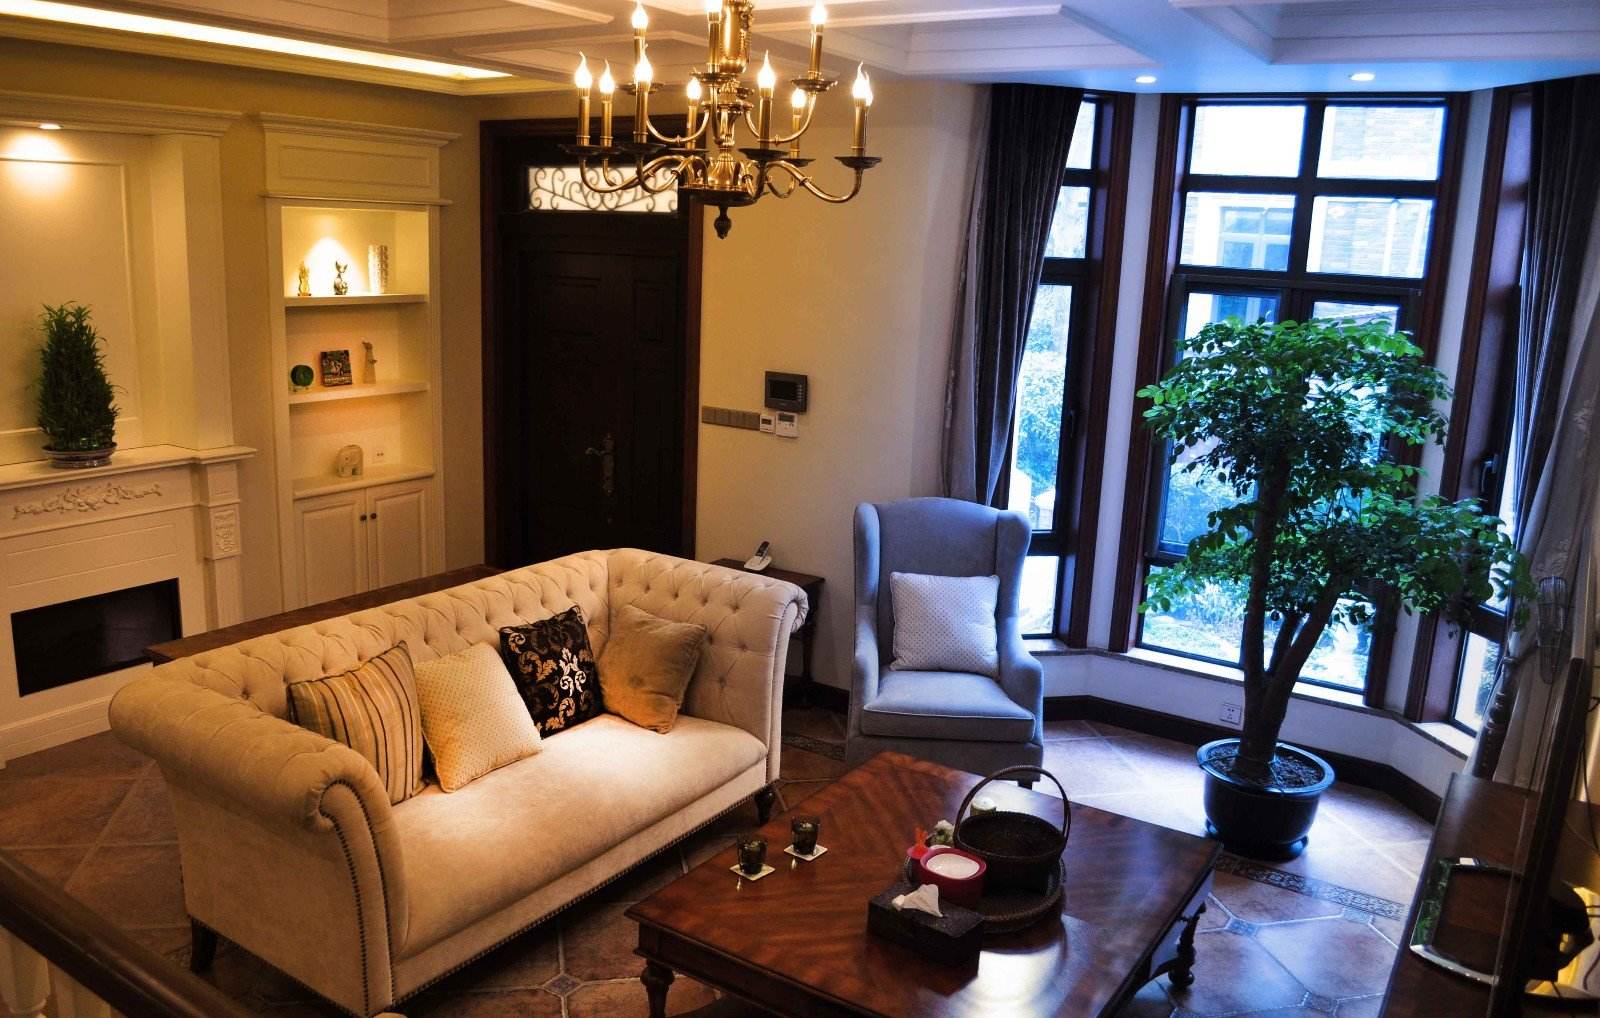 典雅休闲美式设计风格客厅沙发效果图